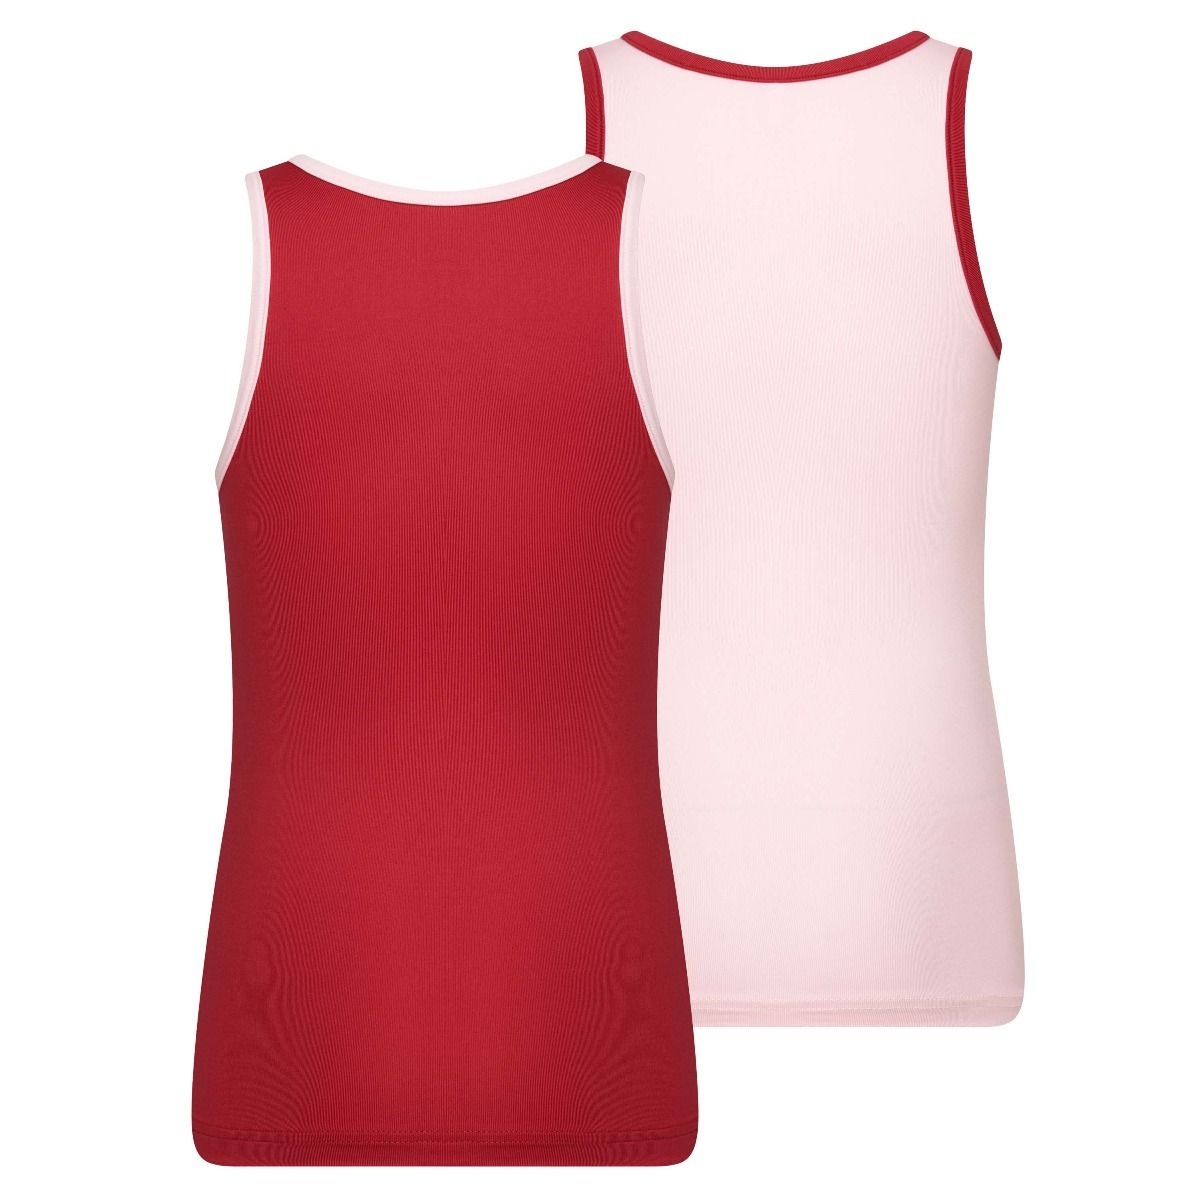 Beeren 2Pack Mix Match Meisjes Hemd Roze Rood achterkant